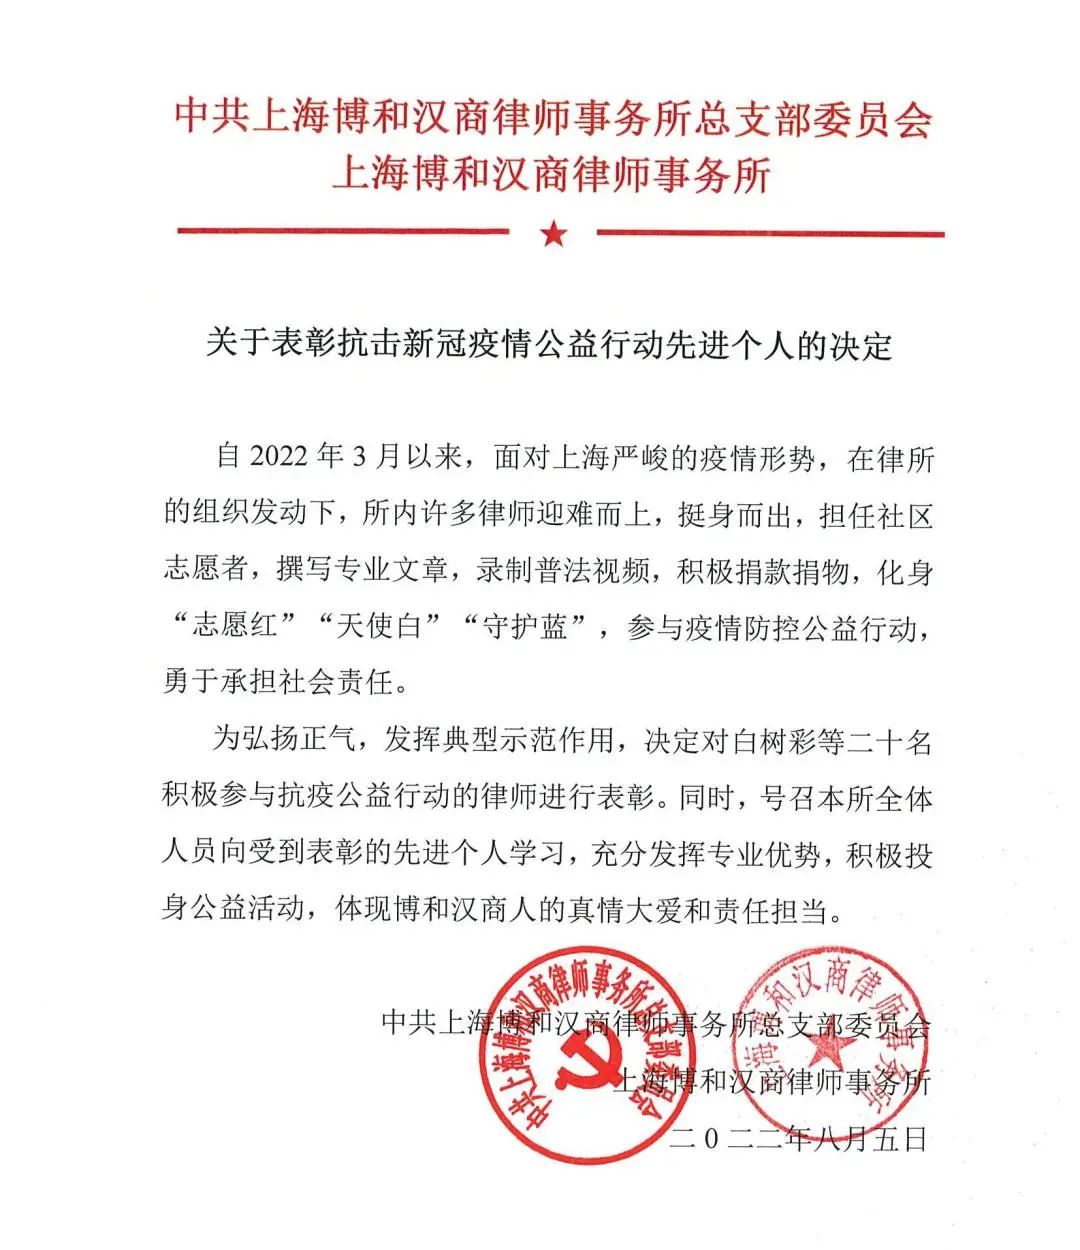 【资讯】上海博和汉商律师事务所抗疫表彰大会